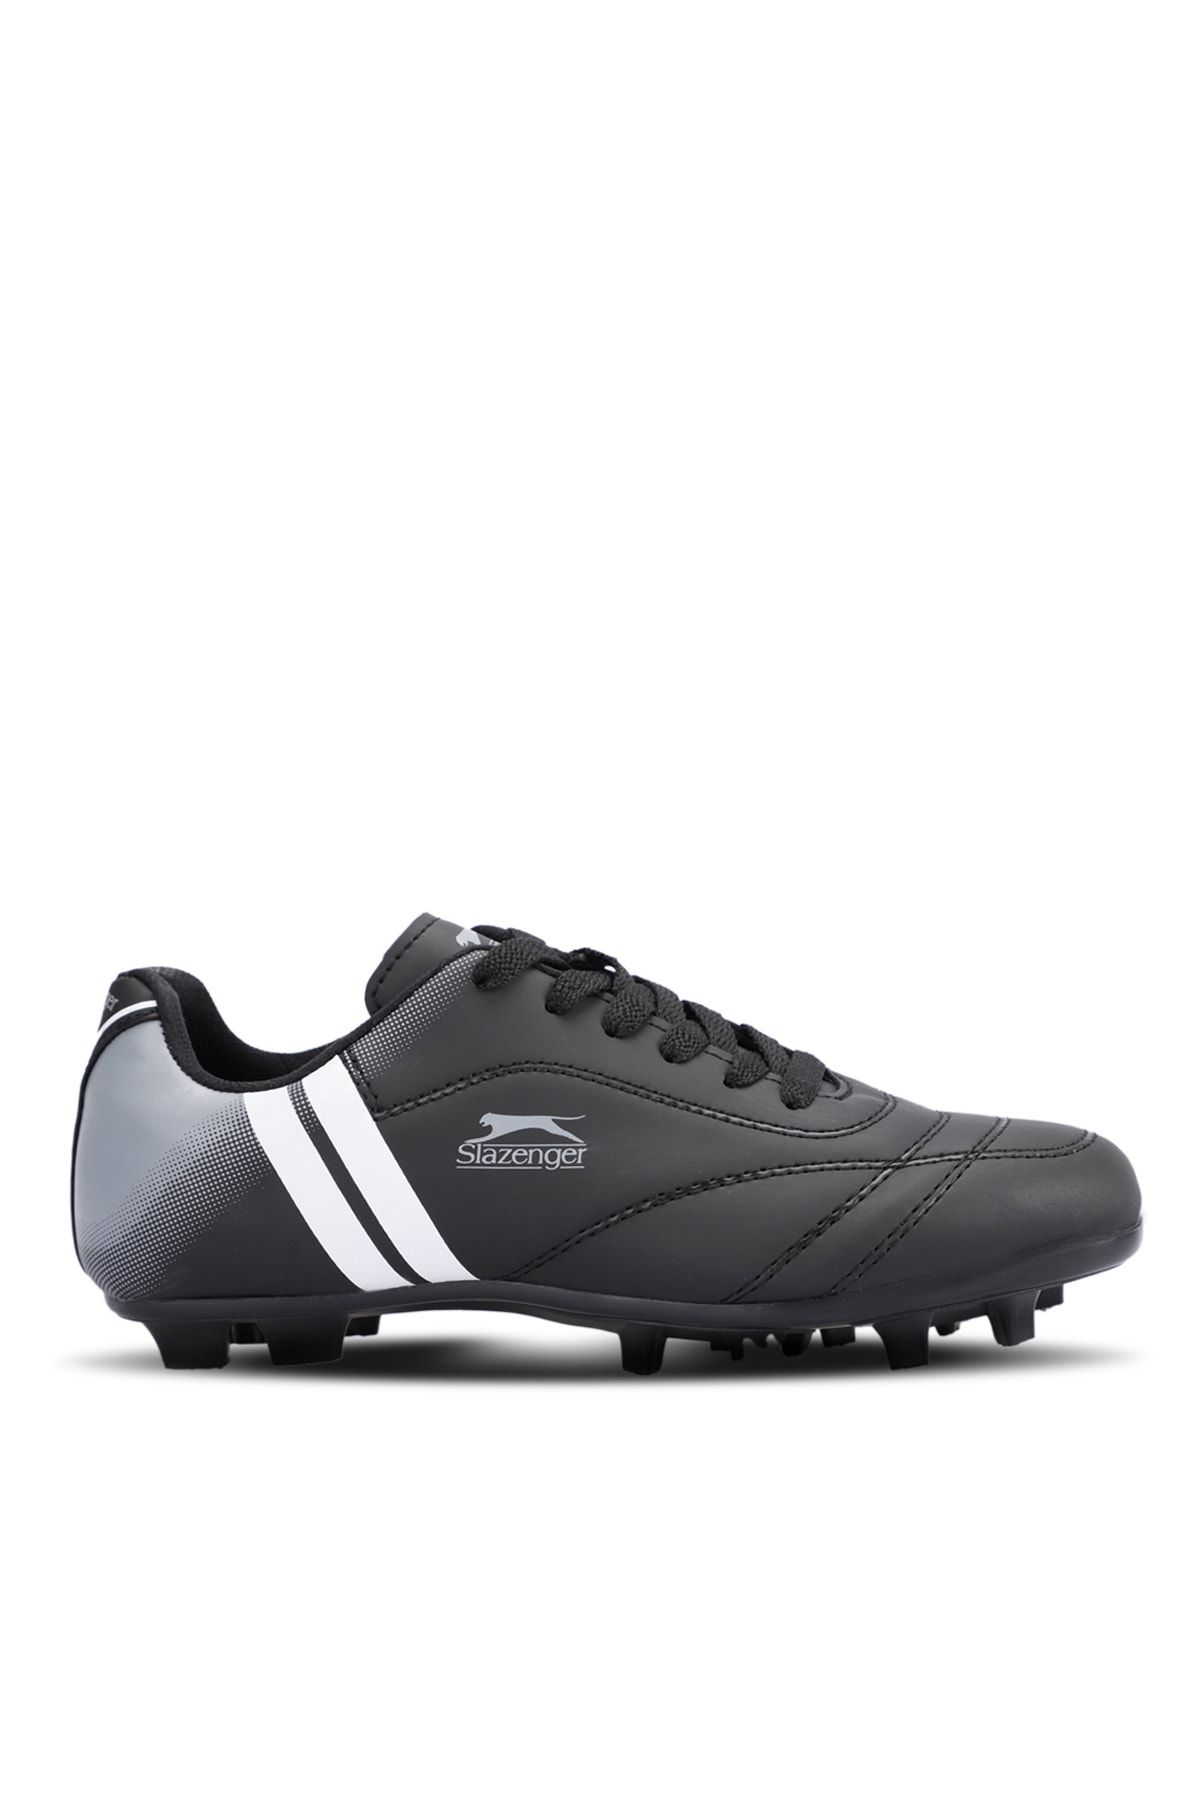 Slazenger Mark Krp Futbol Erkek Halı Saha Ayakkabı Siyah / Beyaz